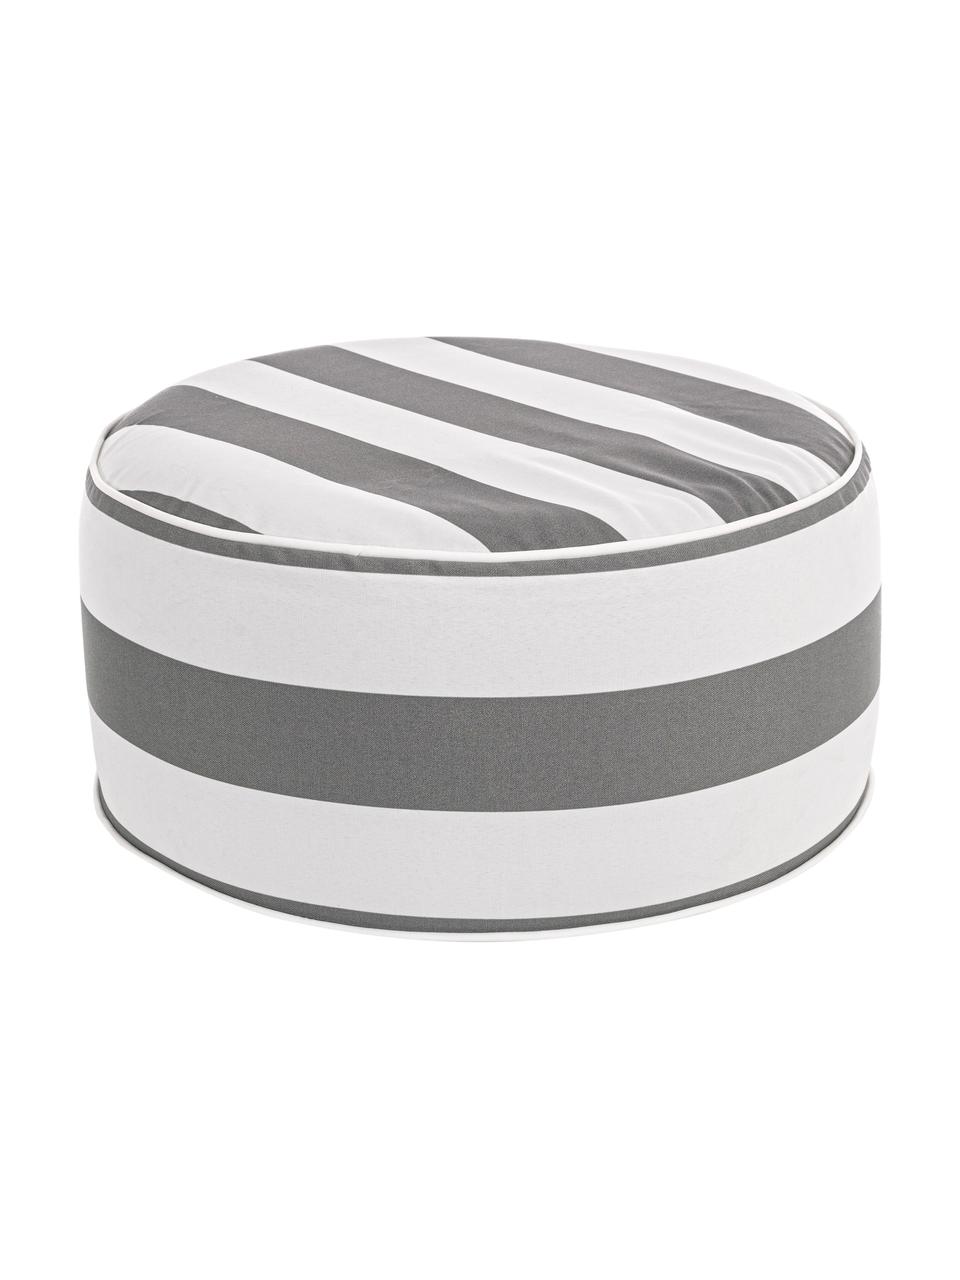 Nadmuchiwany puf zewnętrzny Stripes, Tapicerka: 100% tkanina poliestrowa , Biały, szary, Ø 53 x W 23 cm